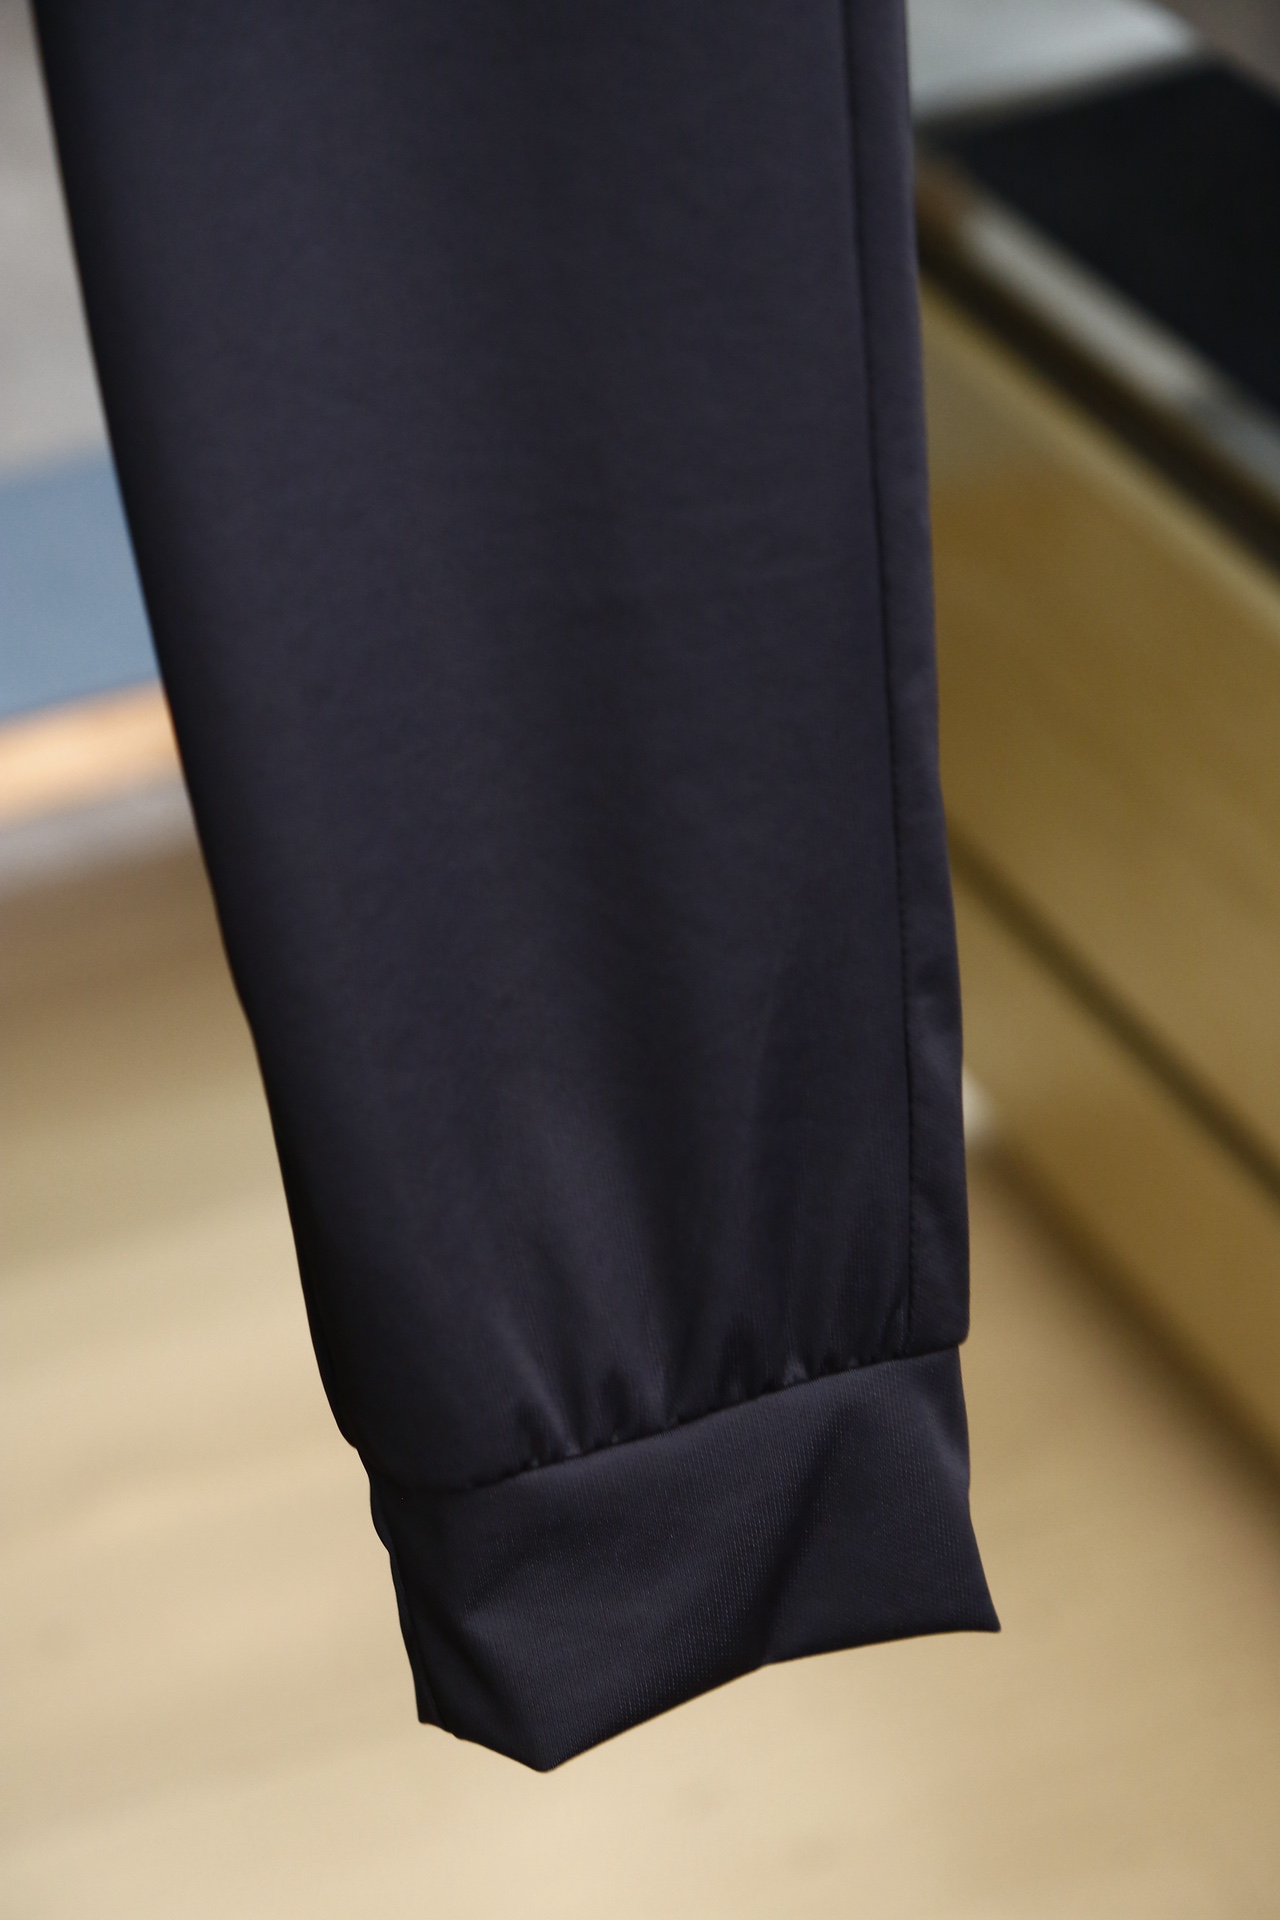 爱马仕早春专柜新品同步上市原单订制高品质时尚西装裤超级百搭款独家定制-进口高端450克欧棉面料手感细腻柔